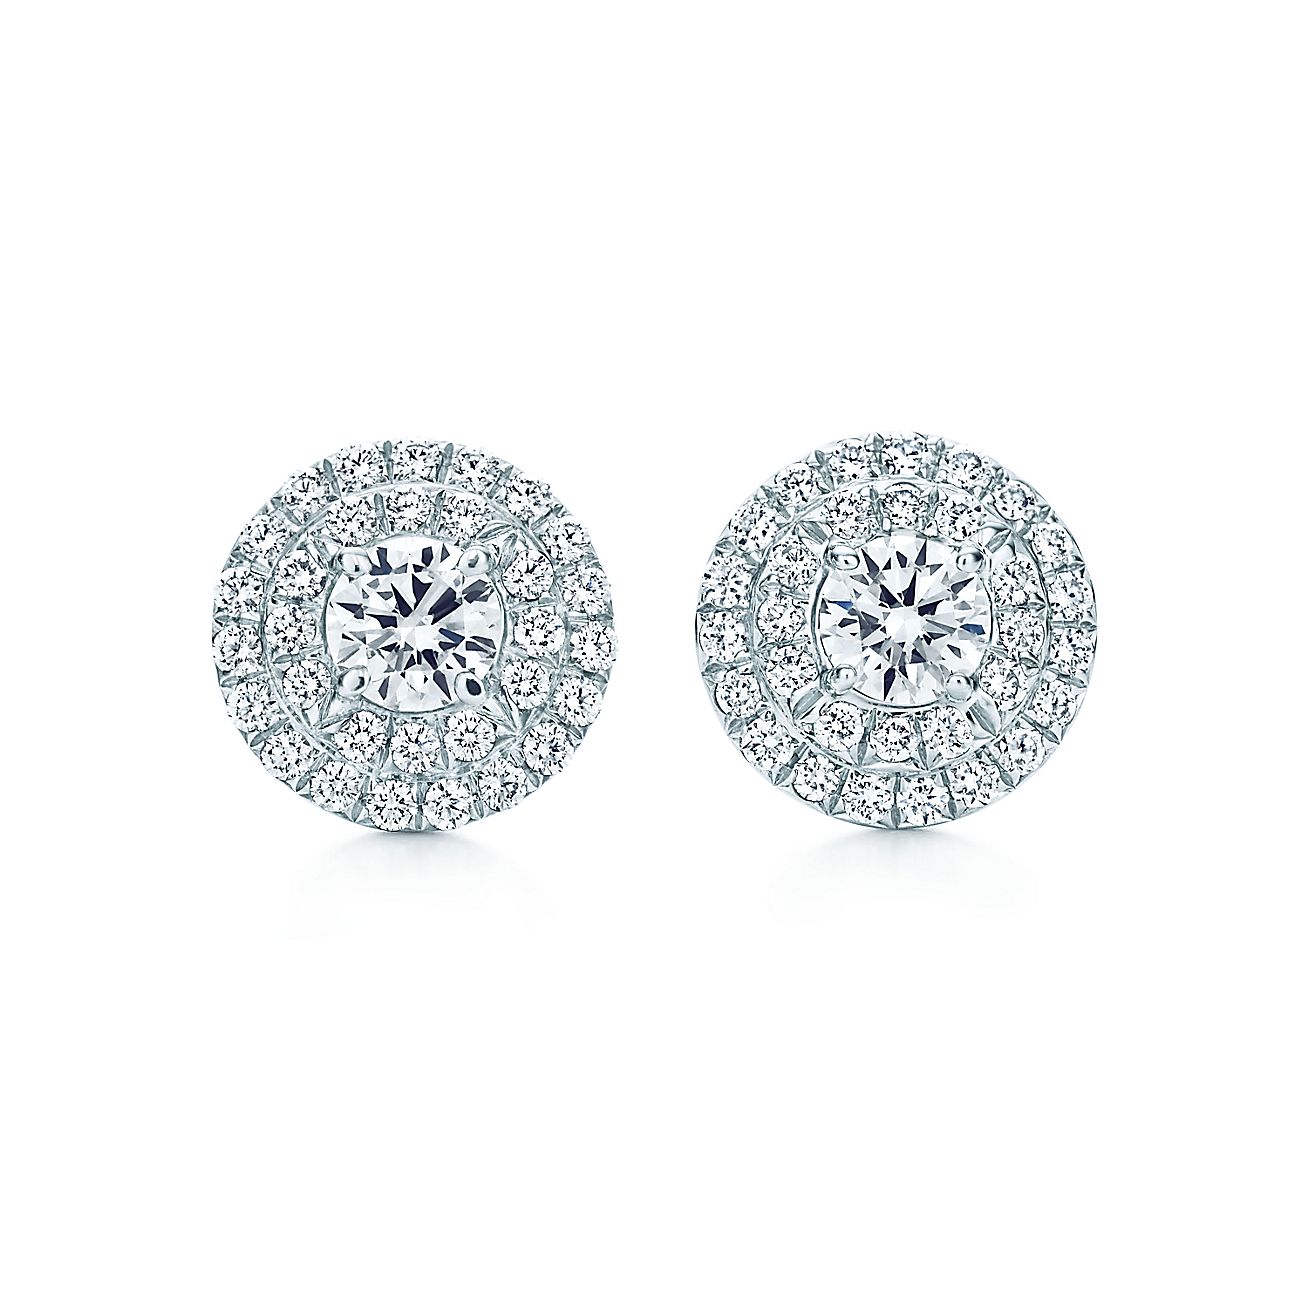 Tiffany Soleste® earrings of diamonds in platinum. | Tiffany & Co.